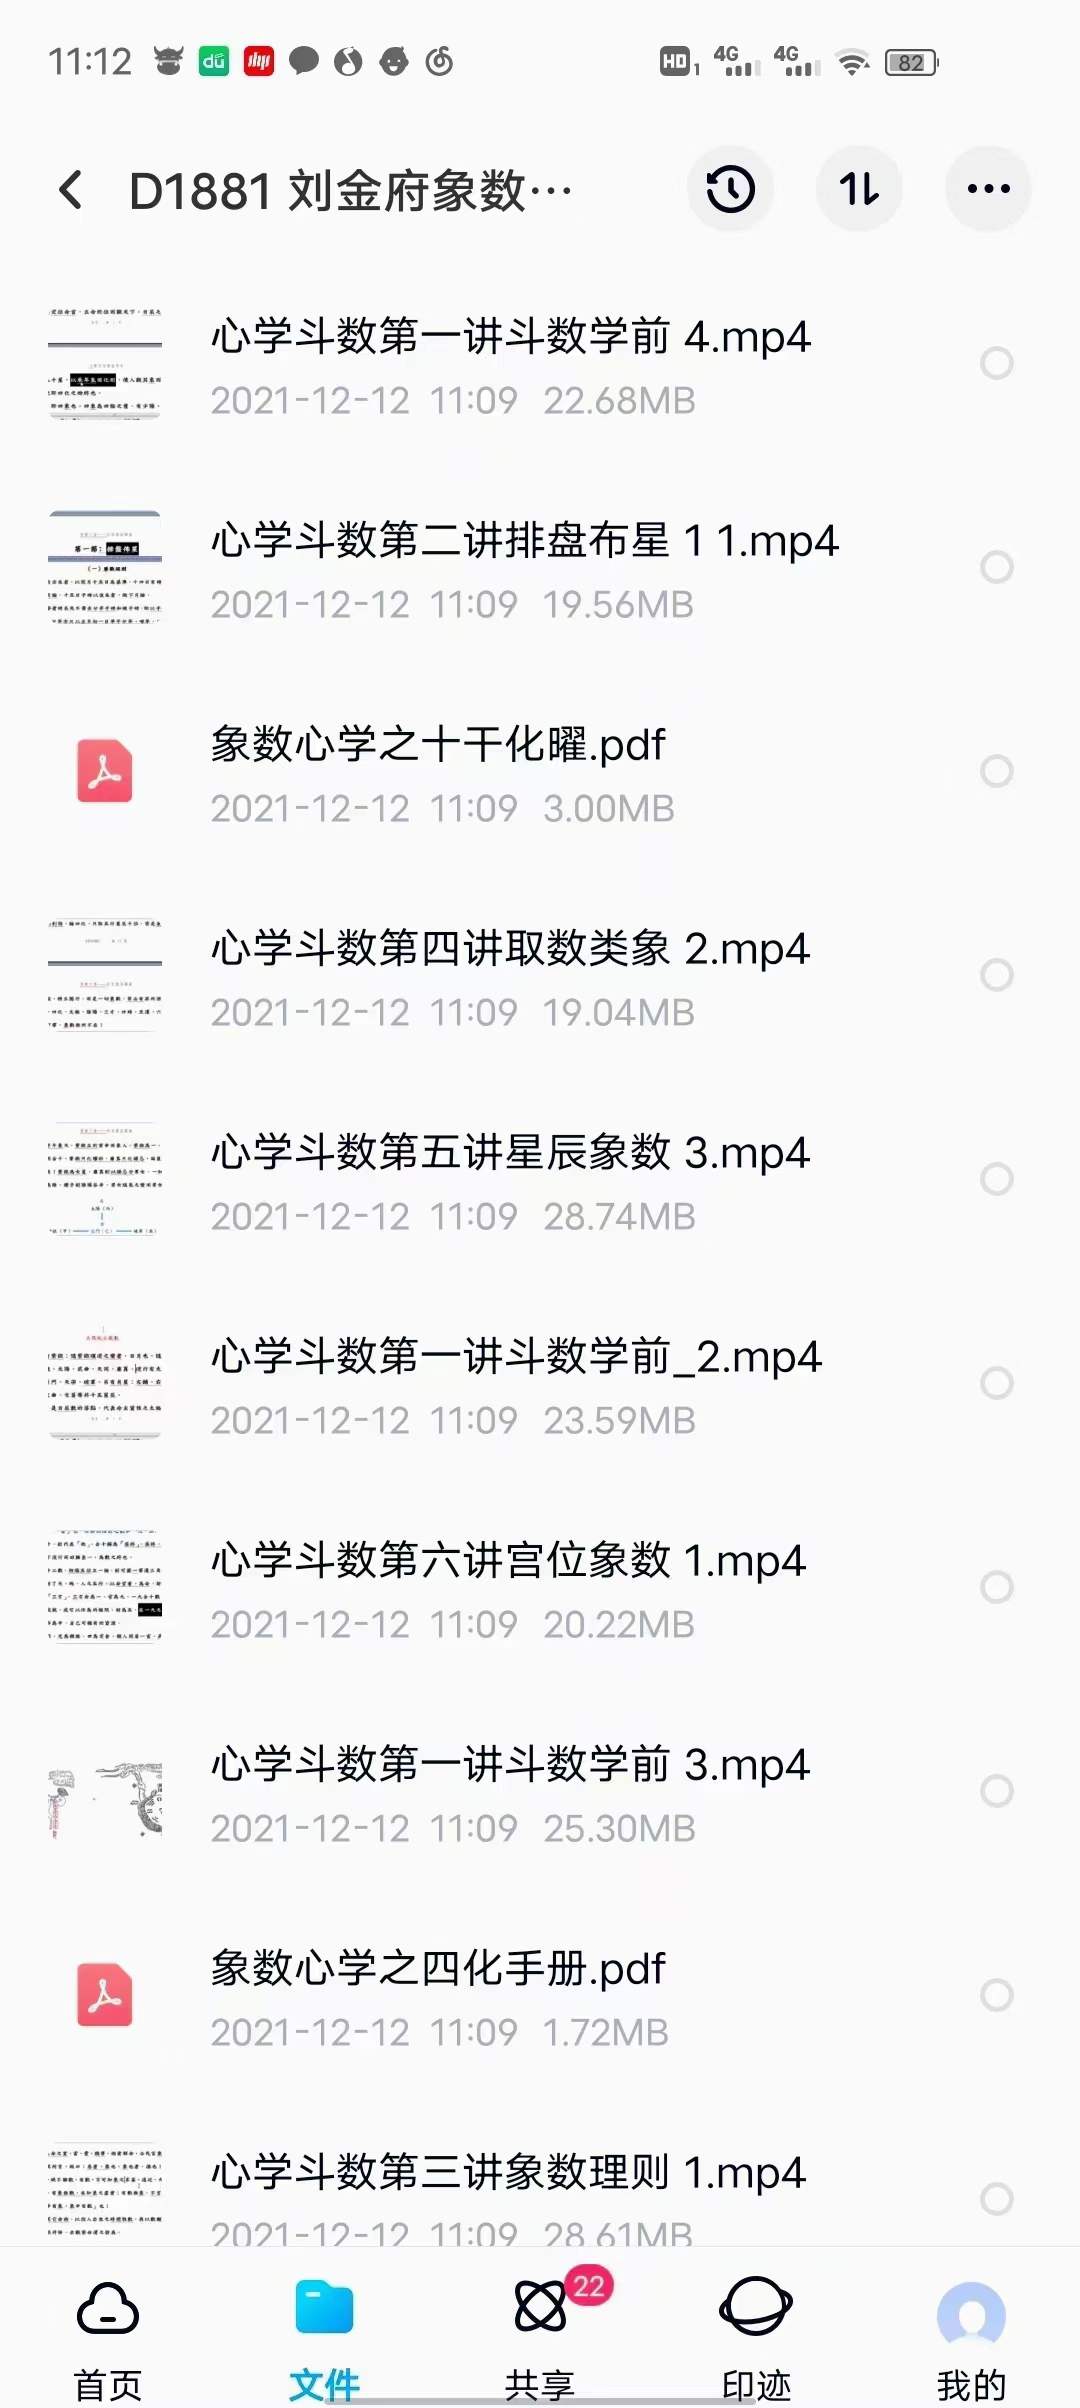 刘金府象数心学紫薇斗数 视频+录音+文档 百度网盘下载(图3)